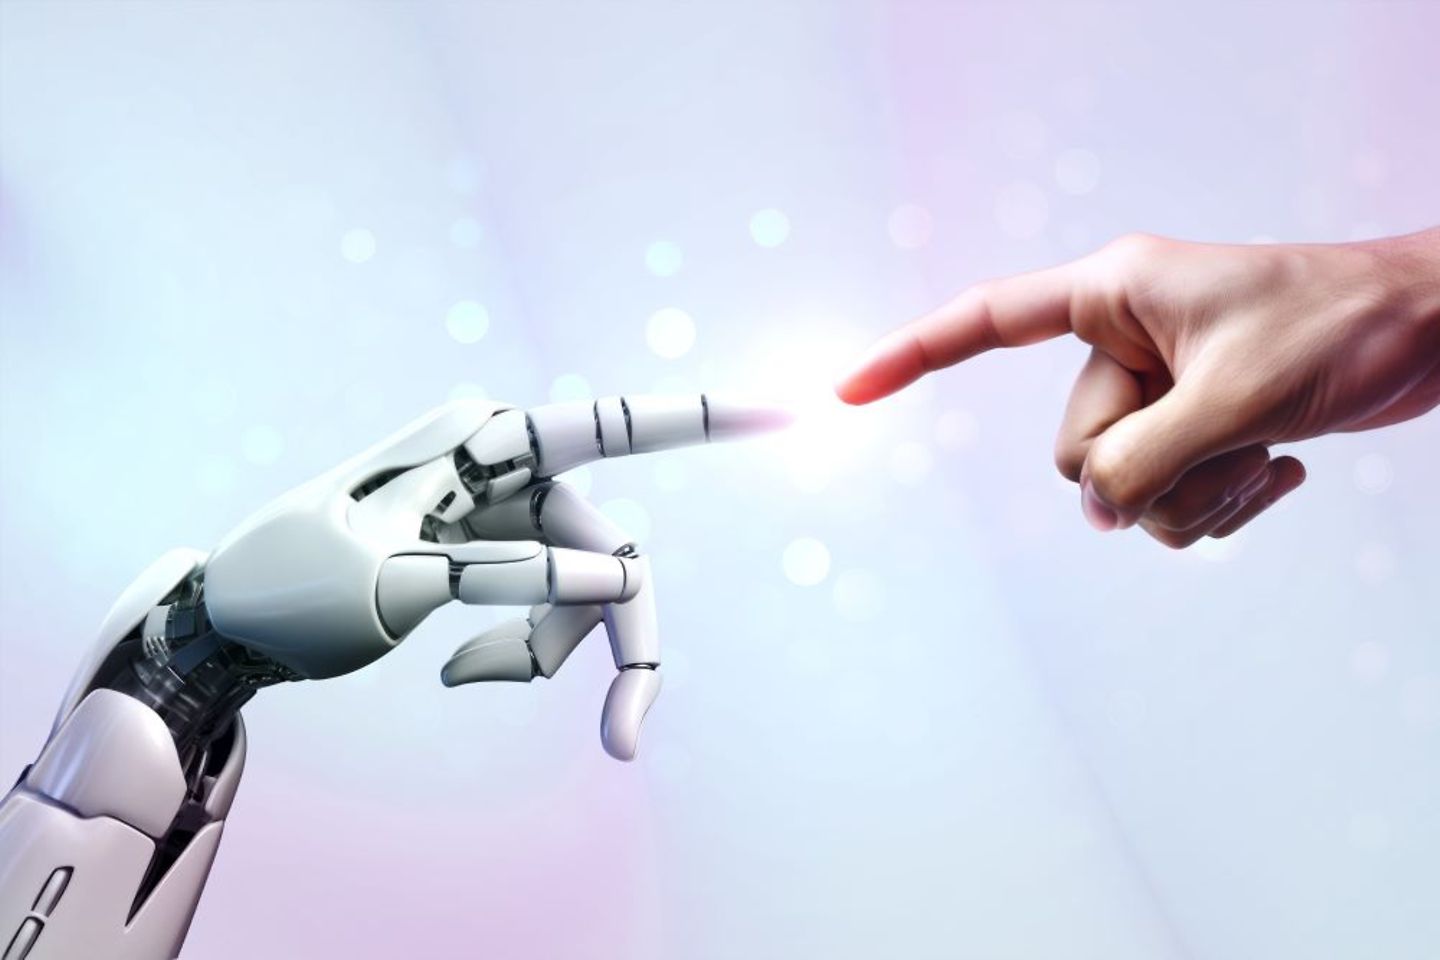 机器人手与人手的触碰与交融